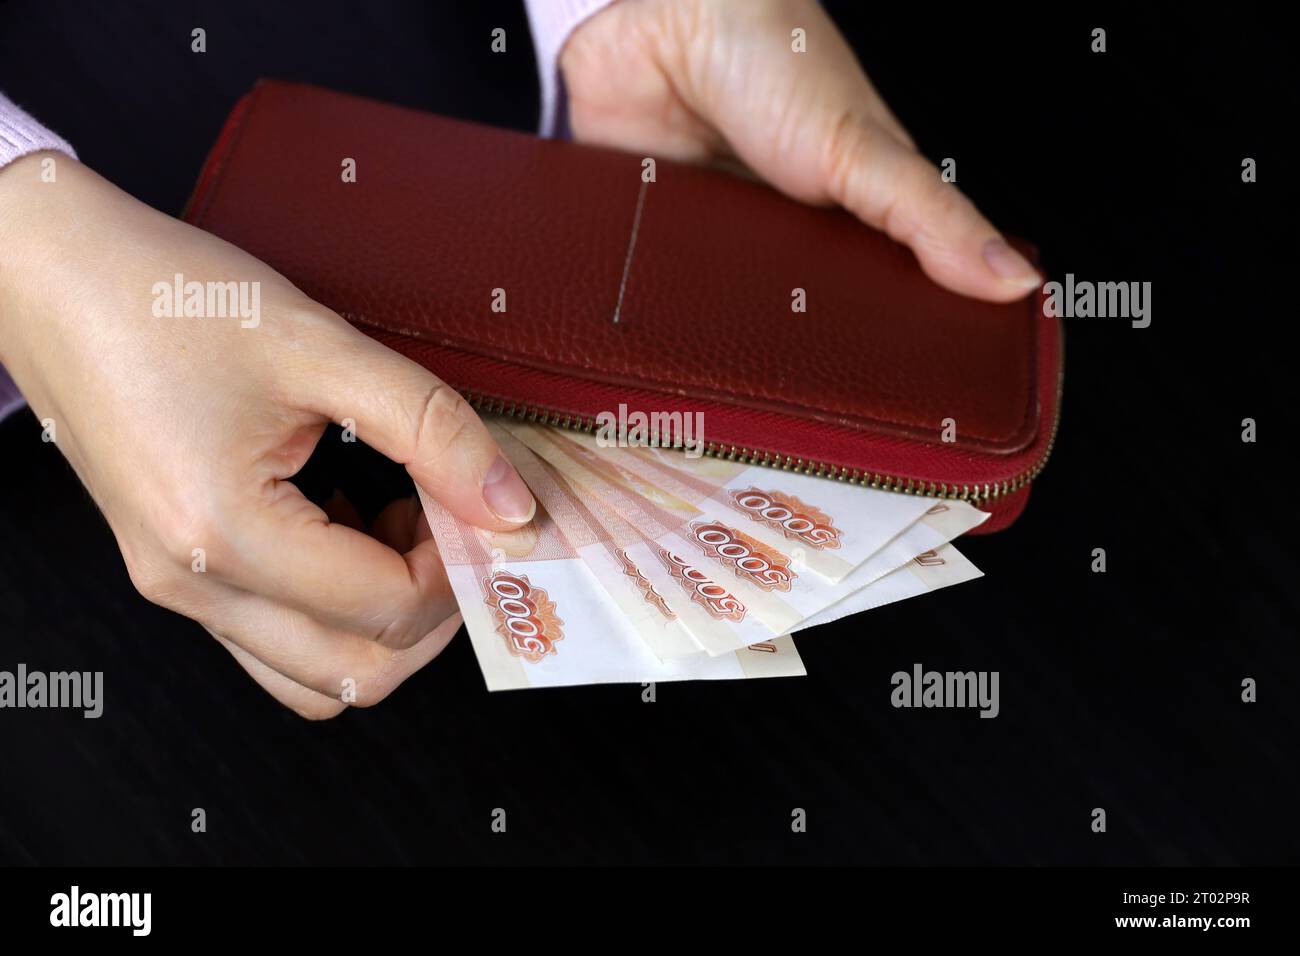 La femme sort des roubles russes du portefeuille rouge. Concept de salaires en Russie, paiements, assistance Banque D'Images